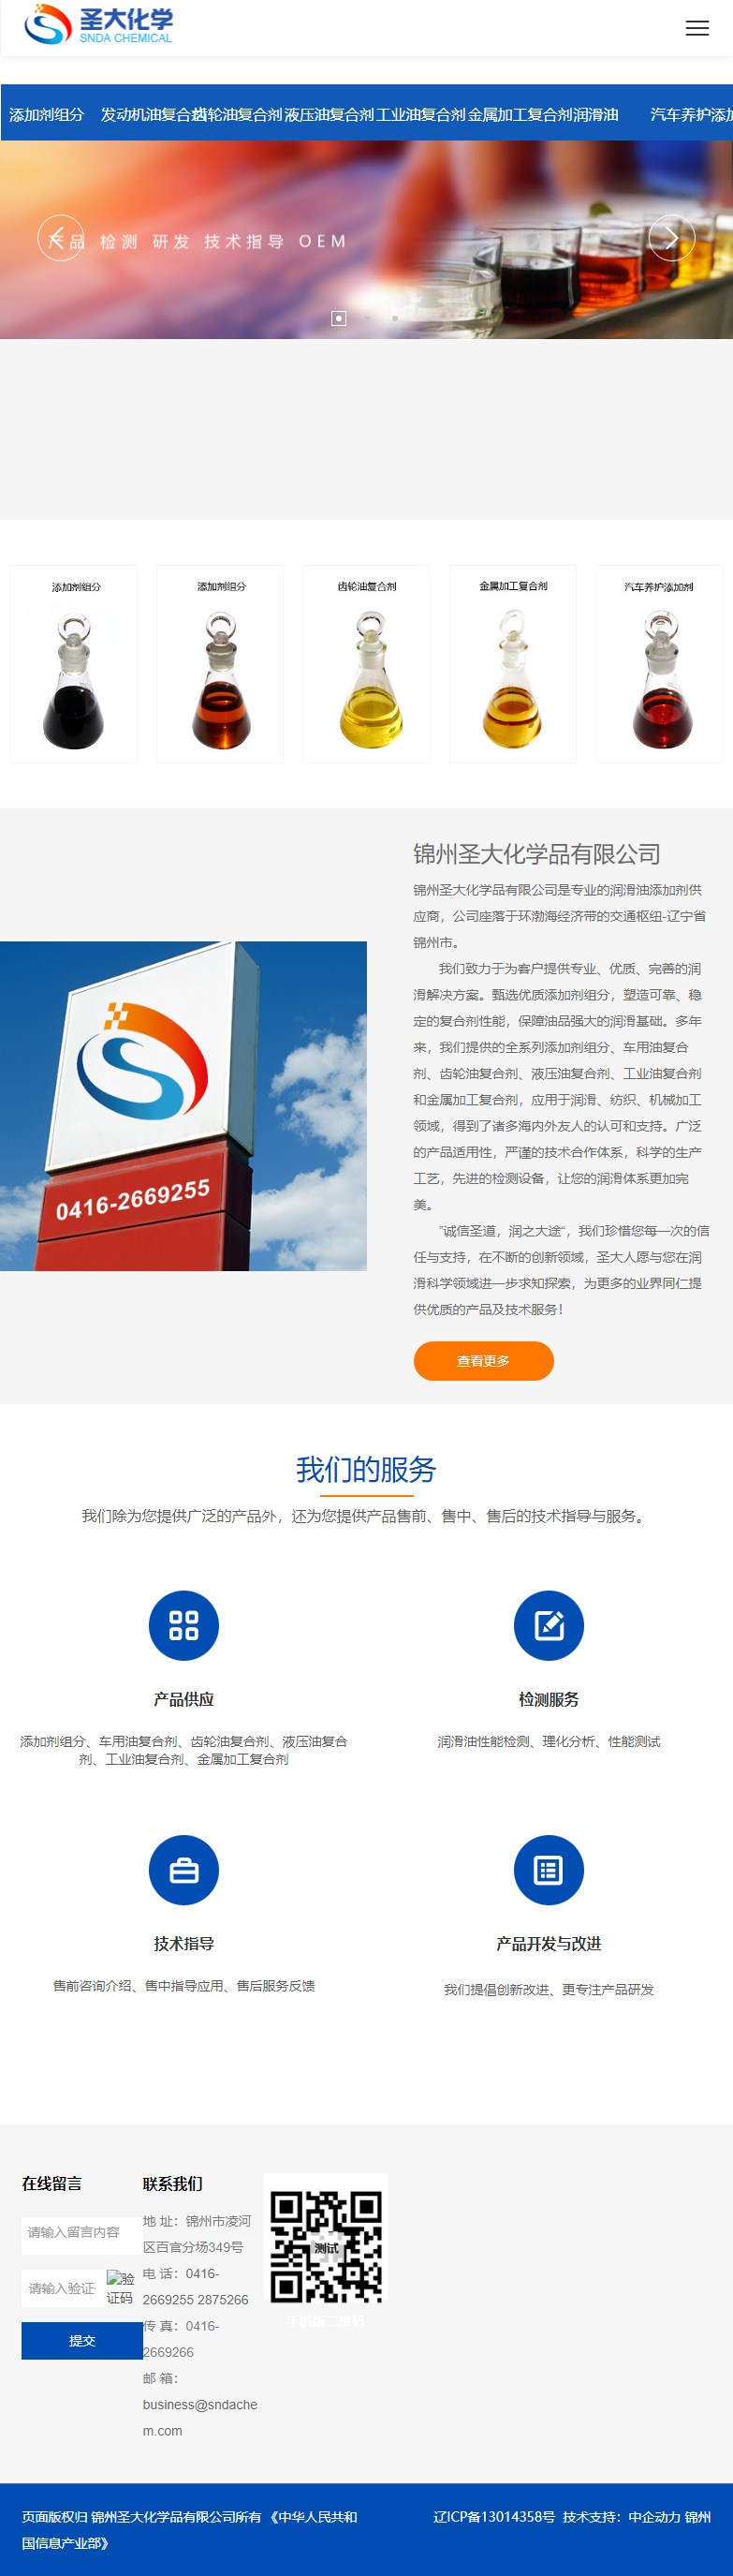 锦州圣大化学品有限公司网站案例